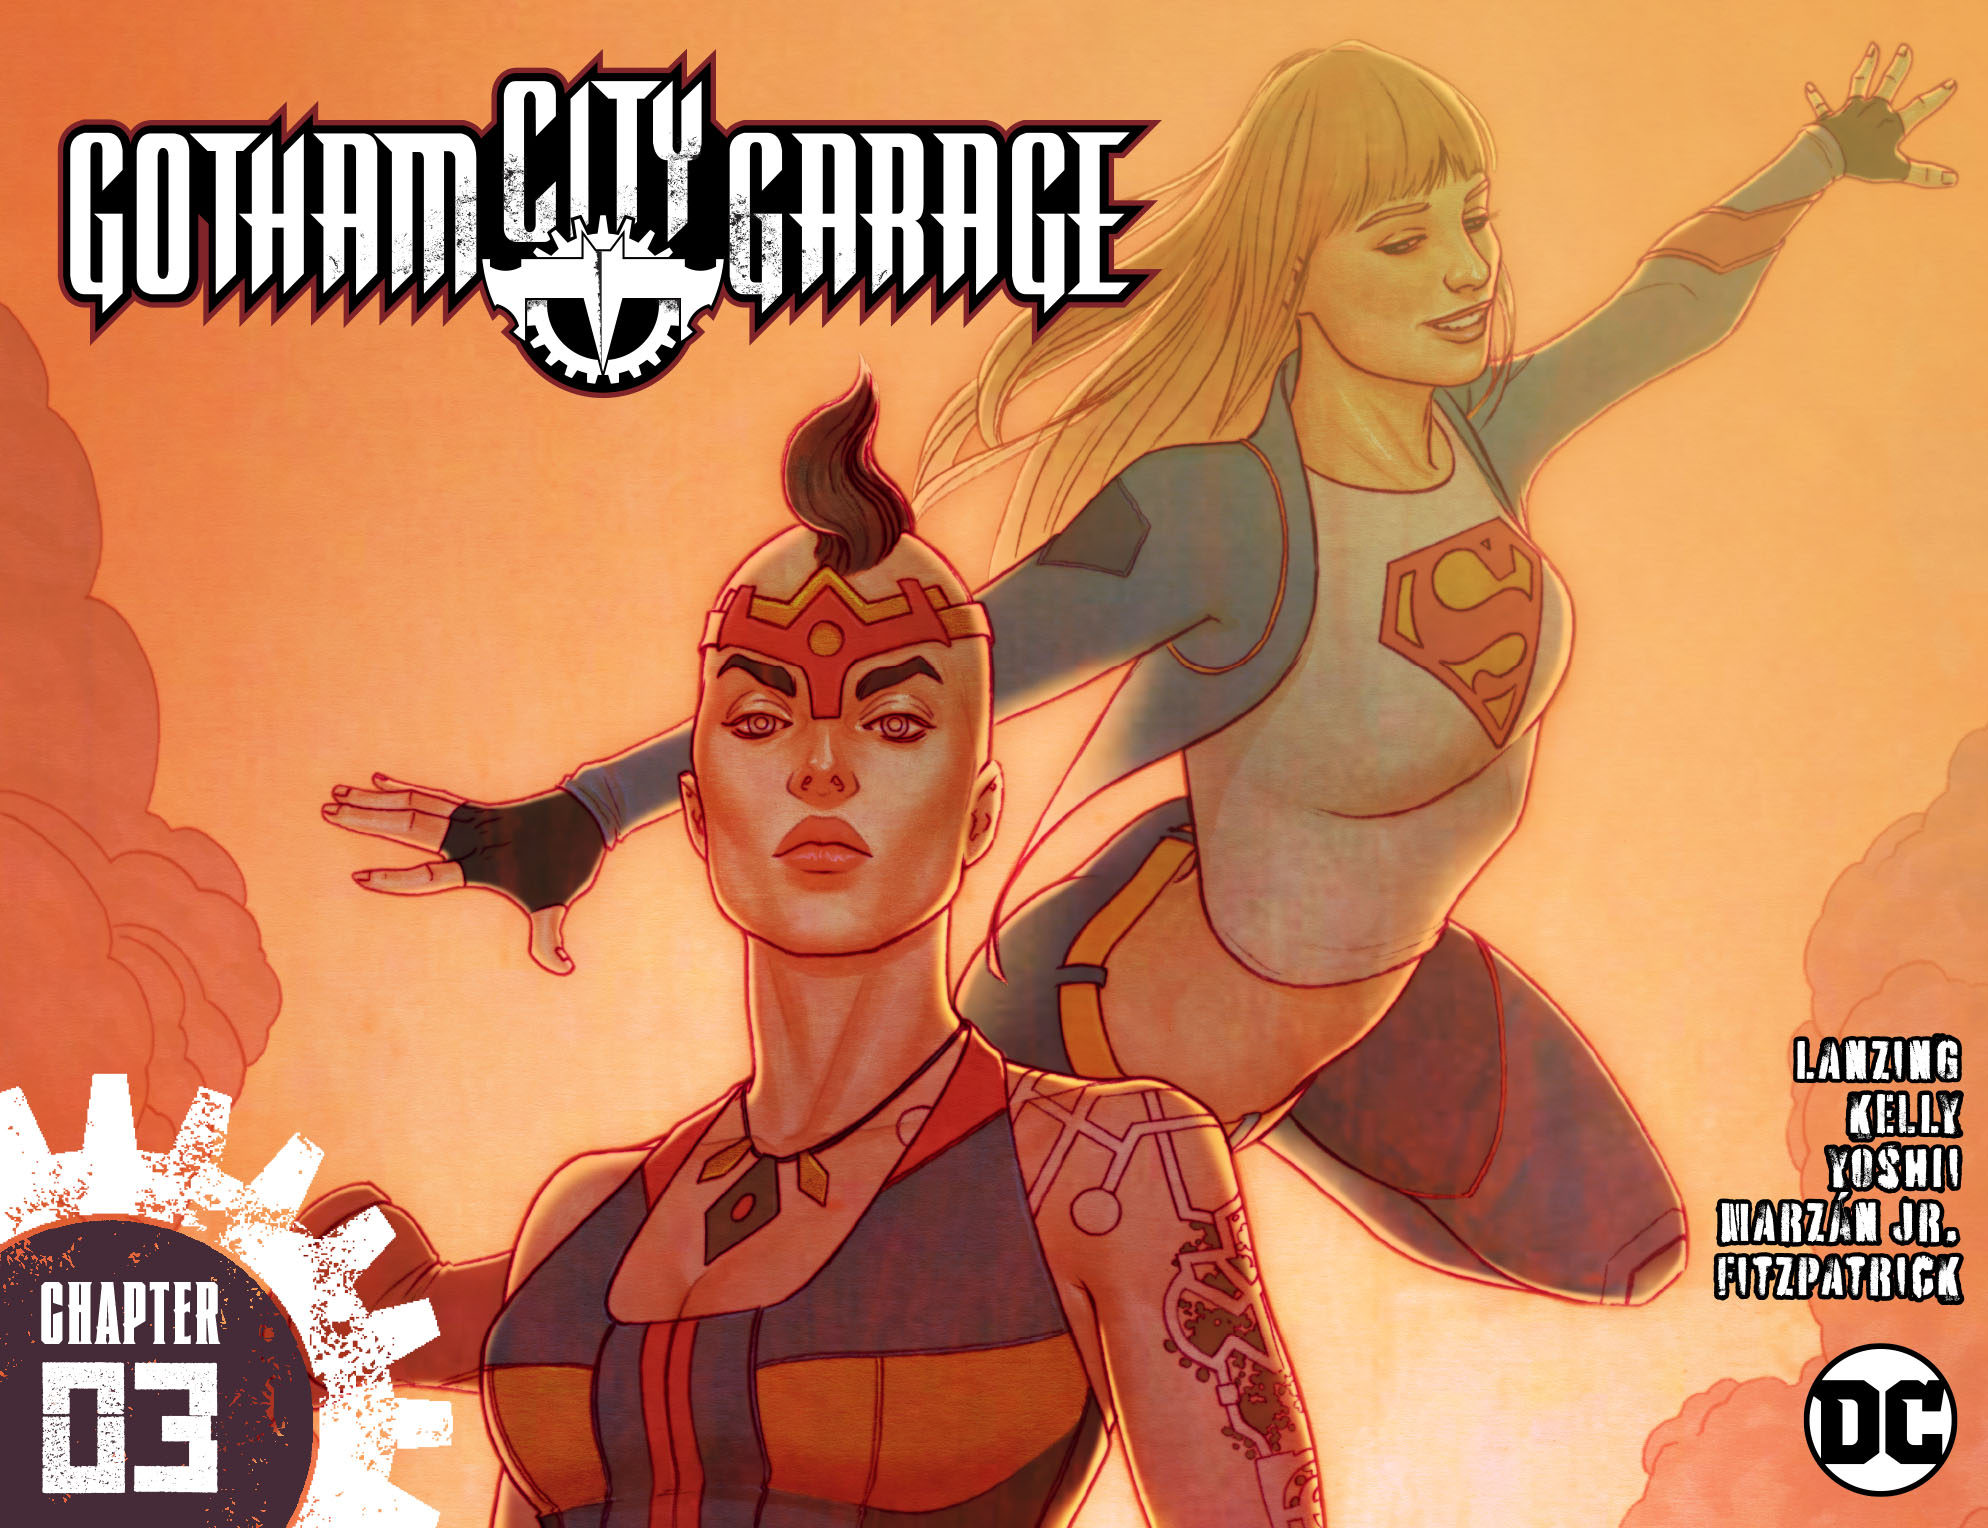 Read online Gotham City Garage comic -  Issue #3 - 1